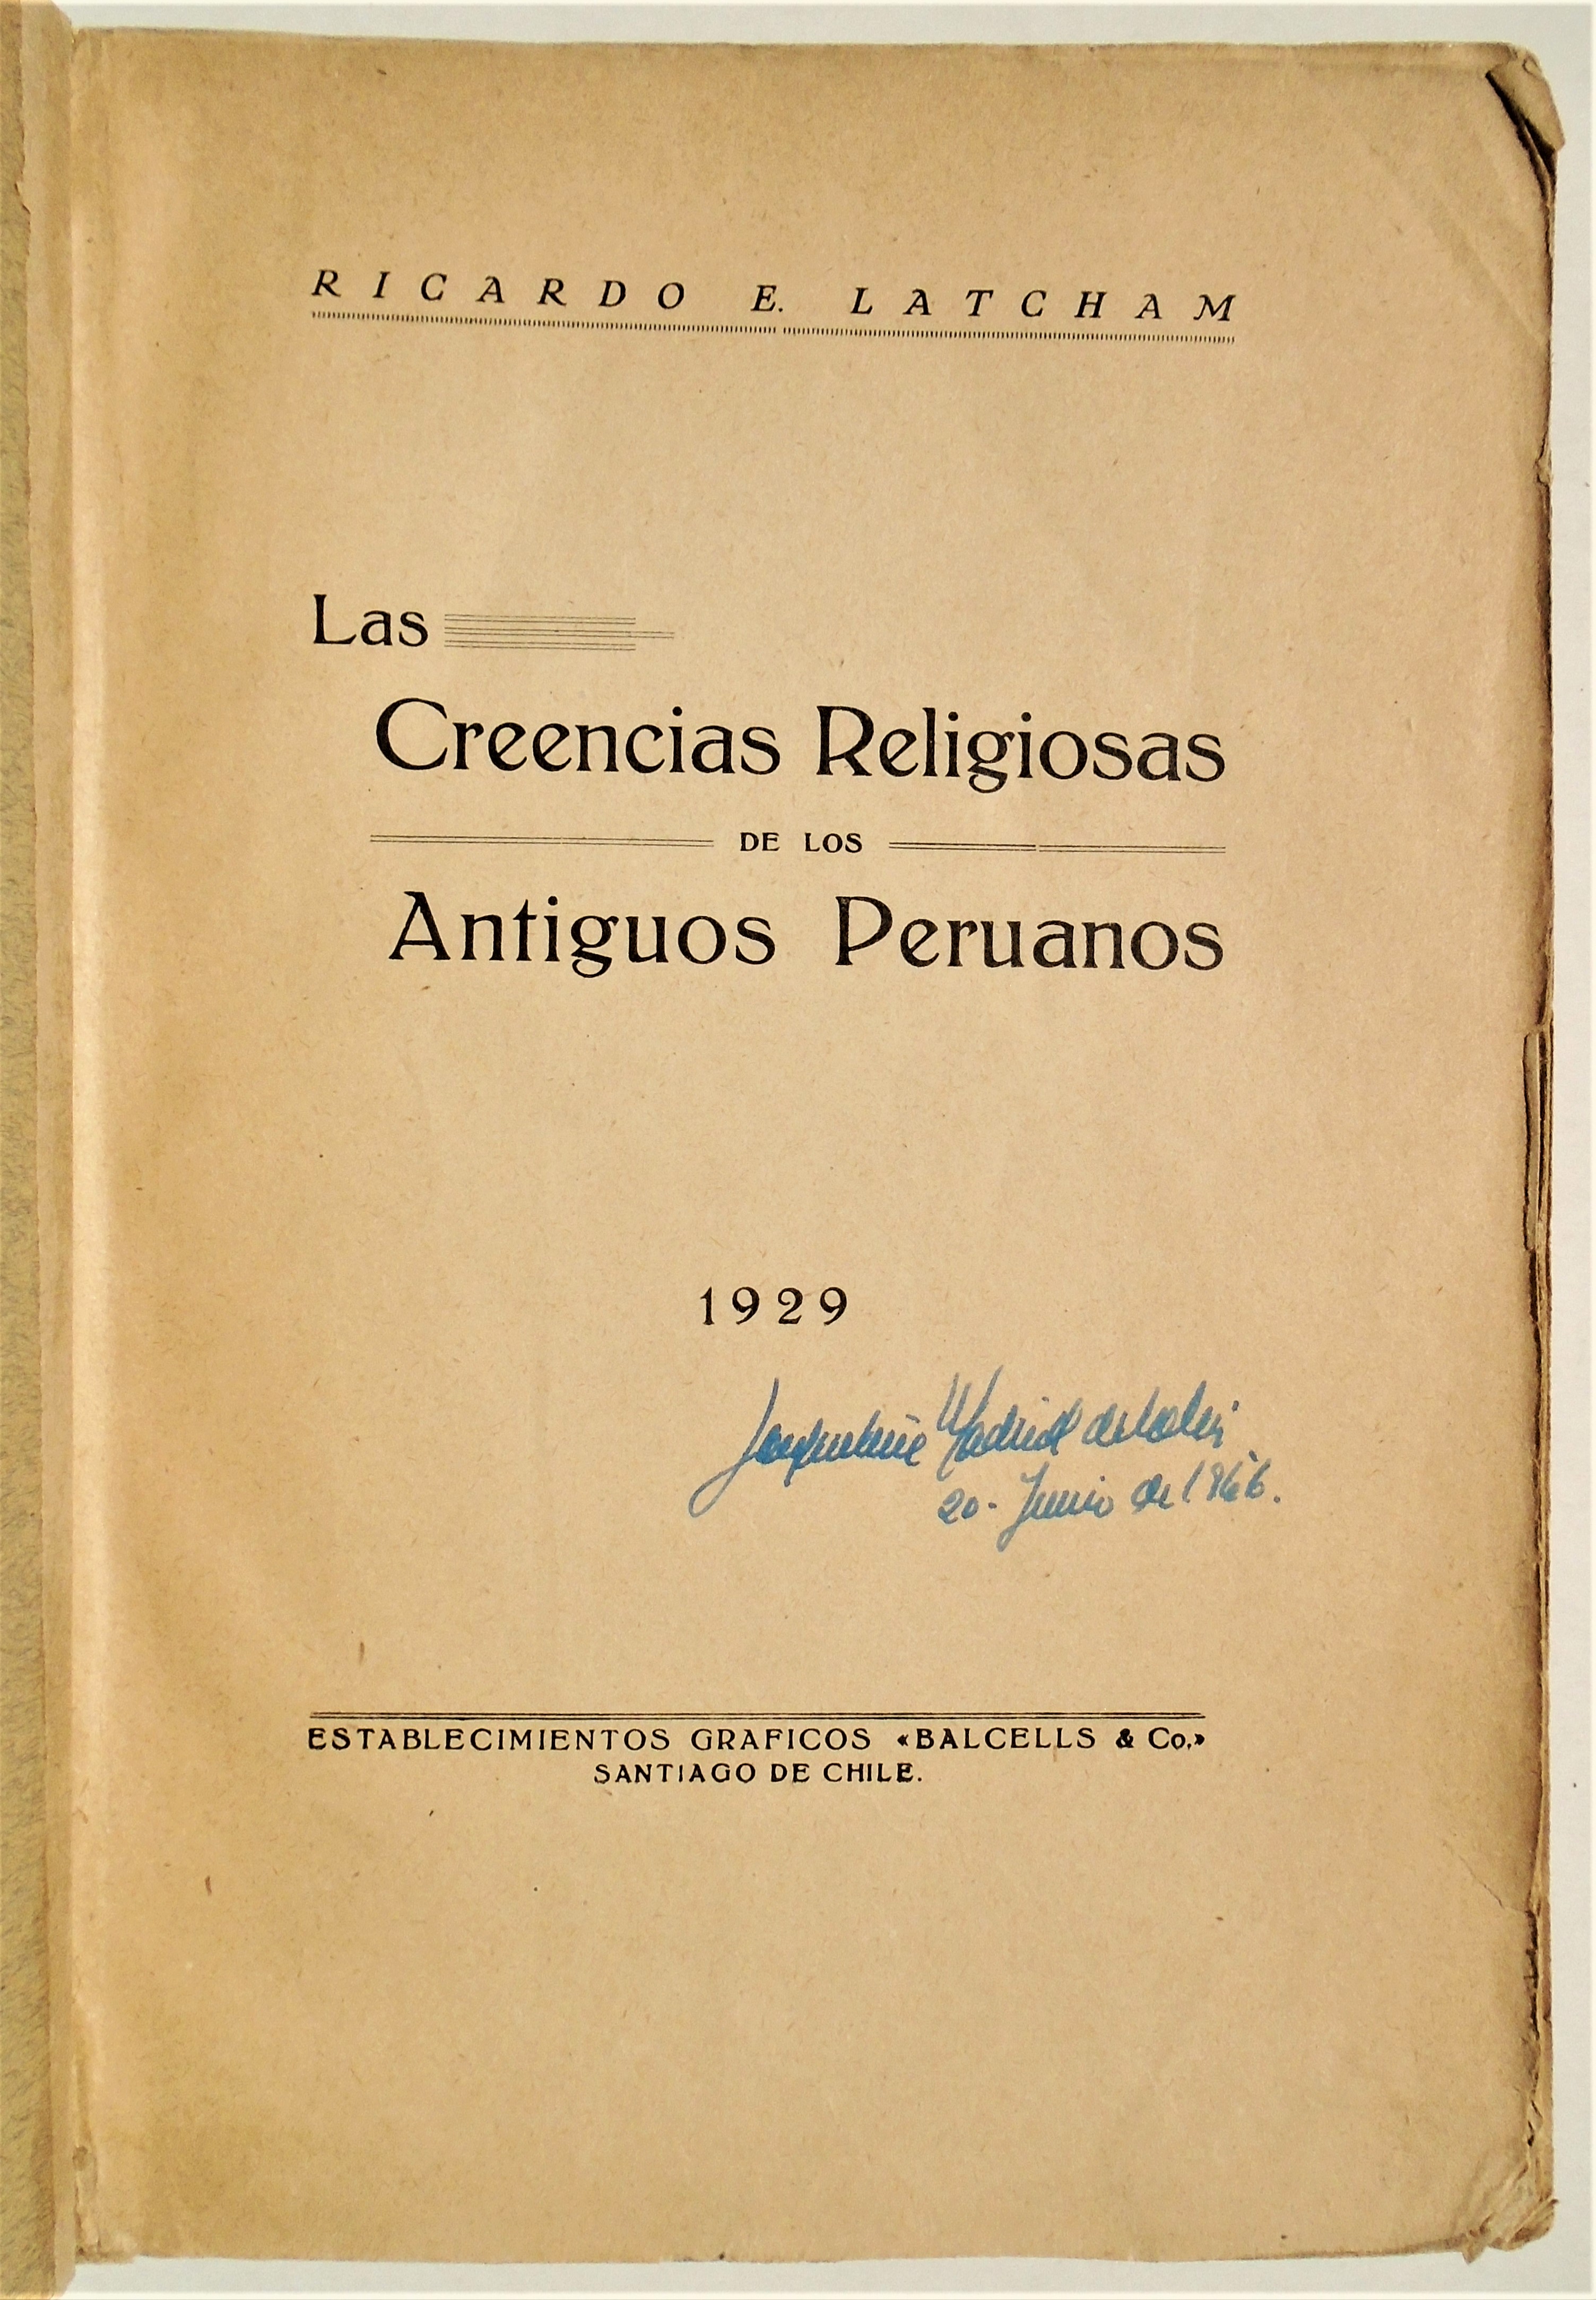 Ricardo Latcham - Las Creencias Religiosas de los Antiguos Peruanos